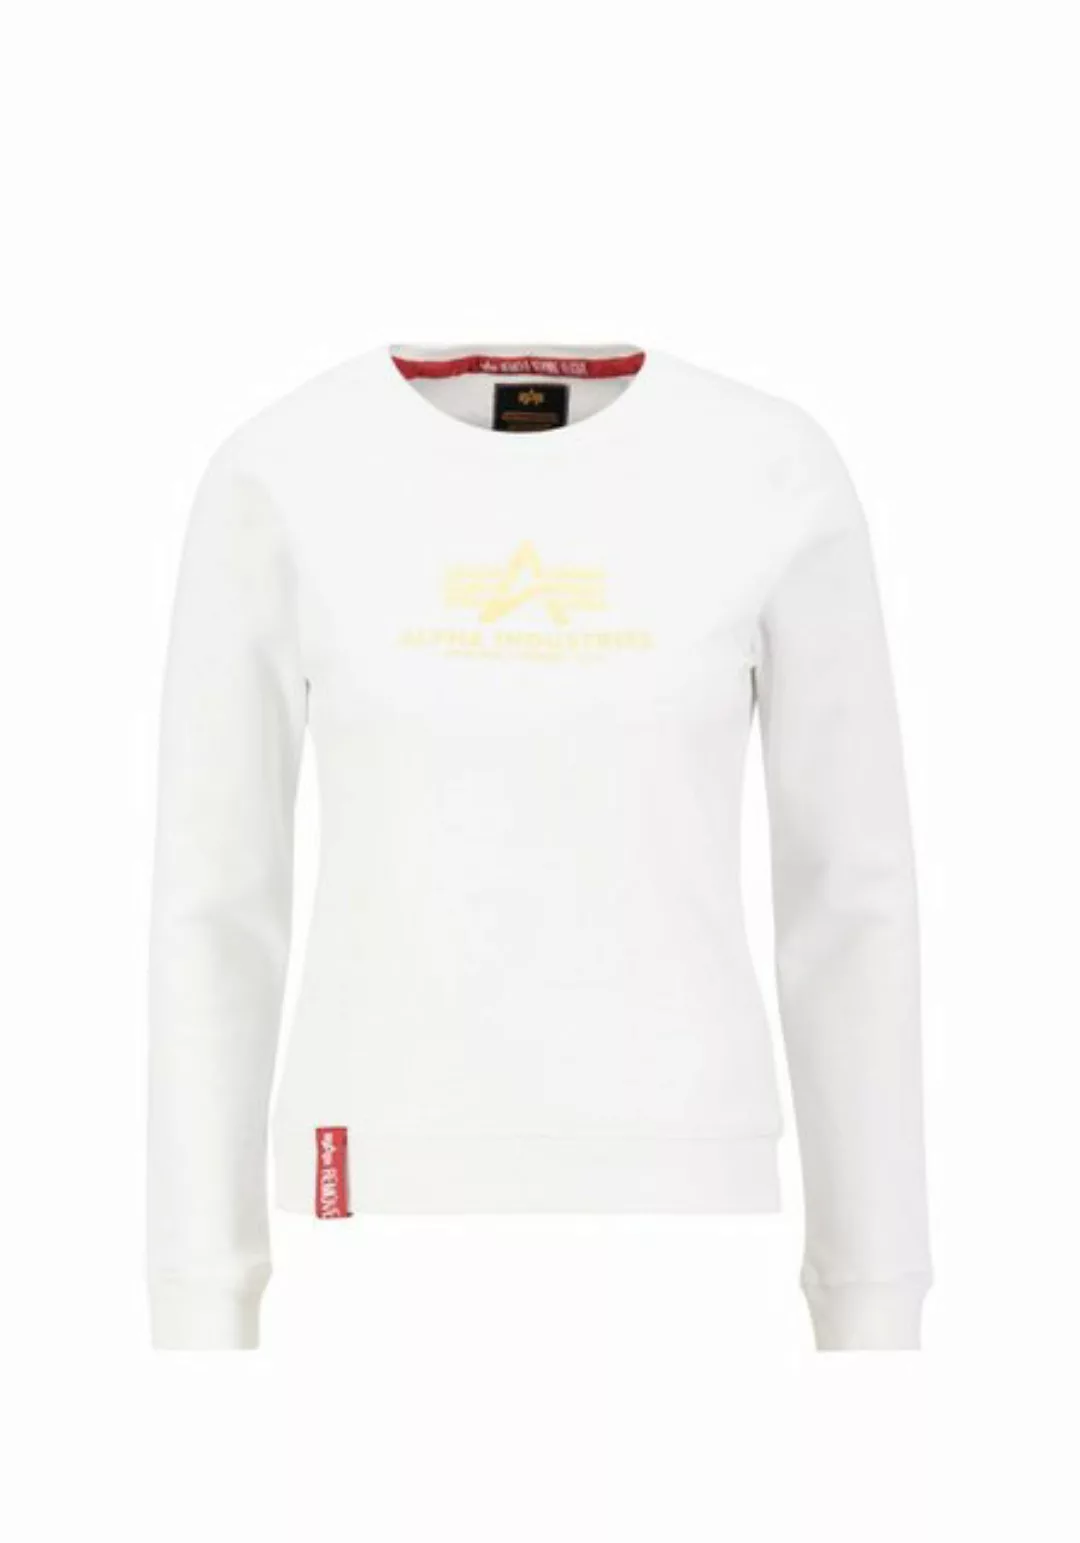 Alpha Industries Sweater "ALPHA INDUSTRIES Women - Sweatshirts" günstig online kaufen